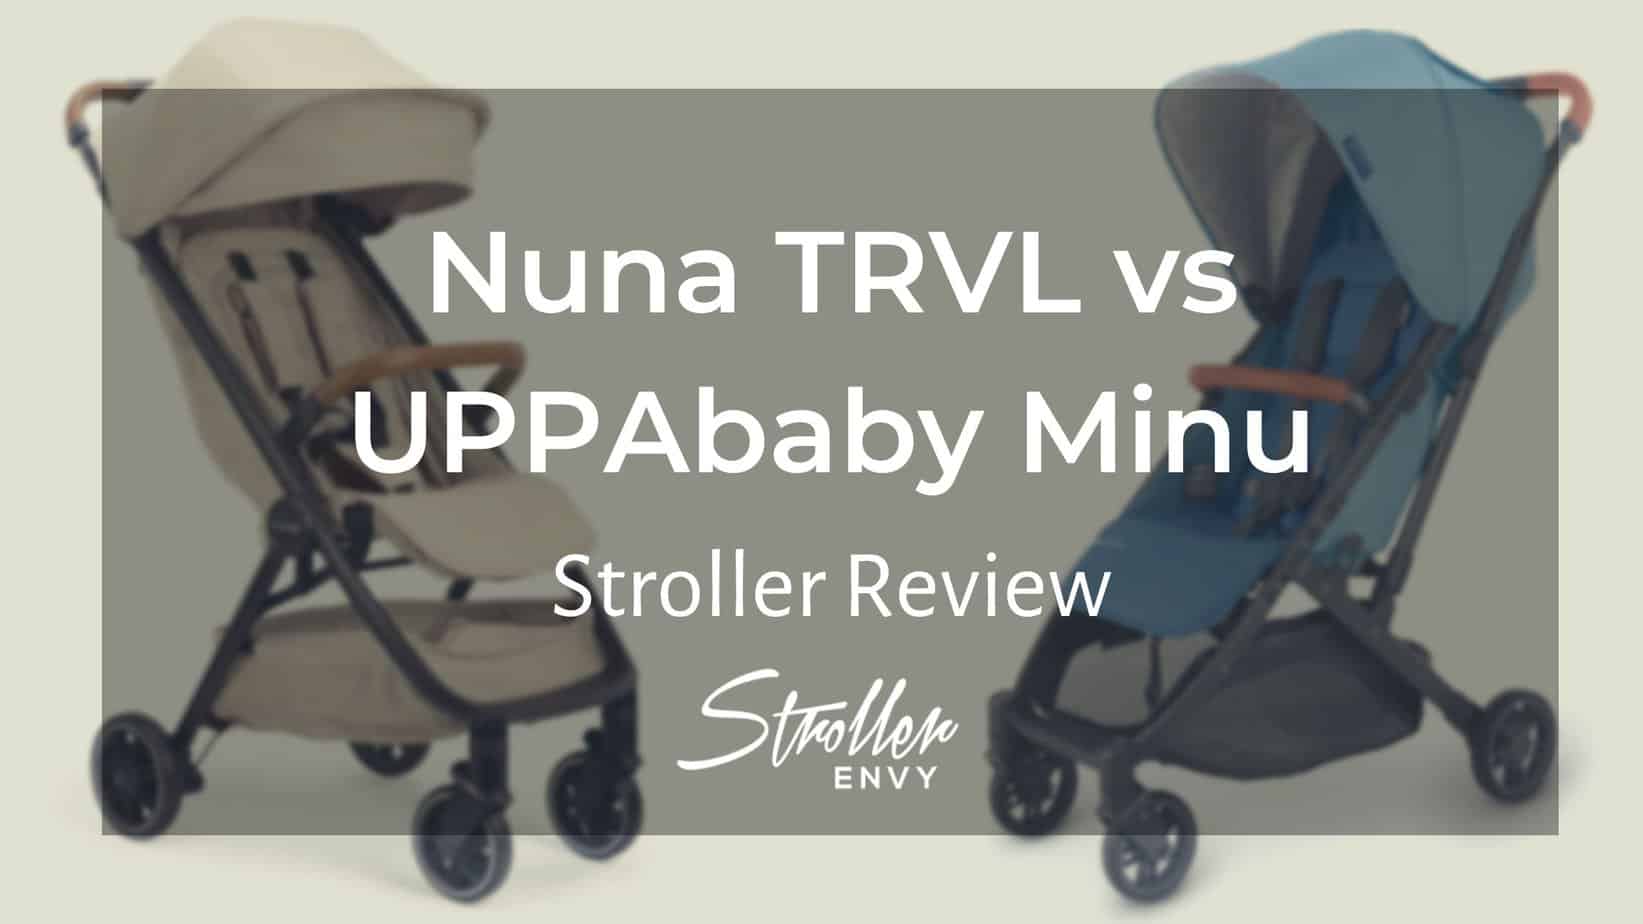 Nuna TRVL vs UPPAbaby Minu